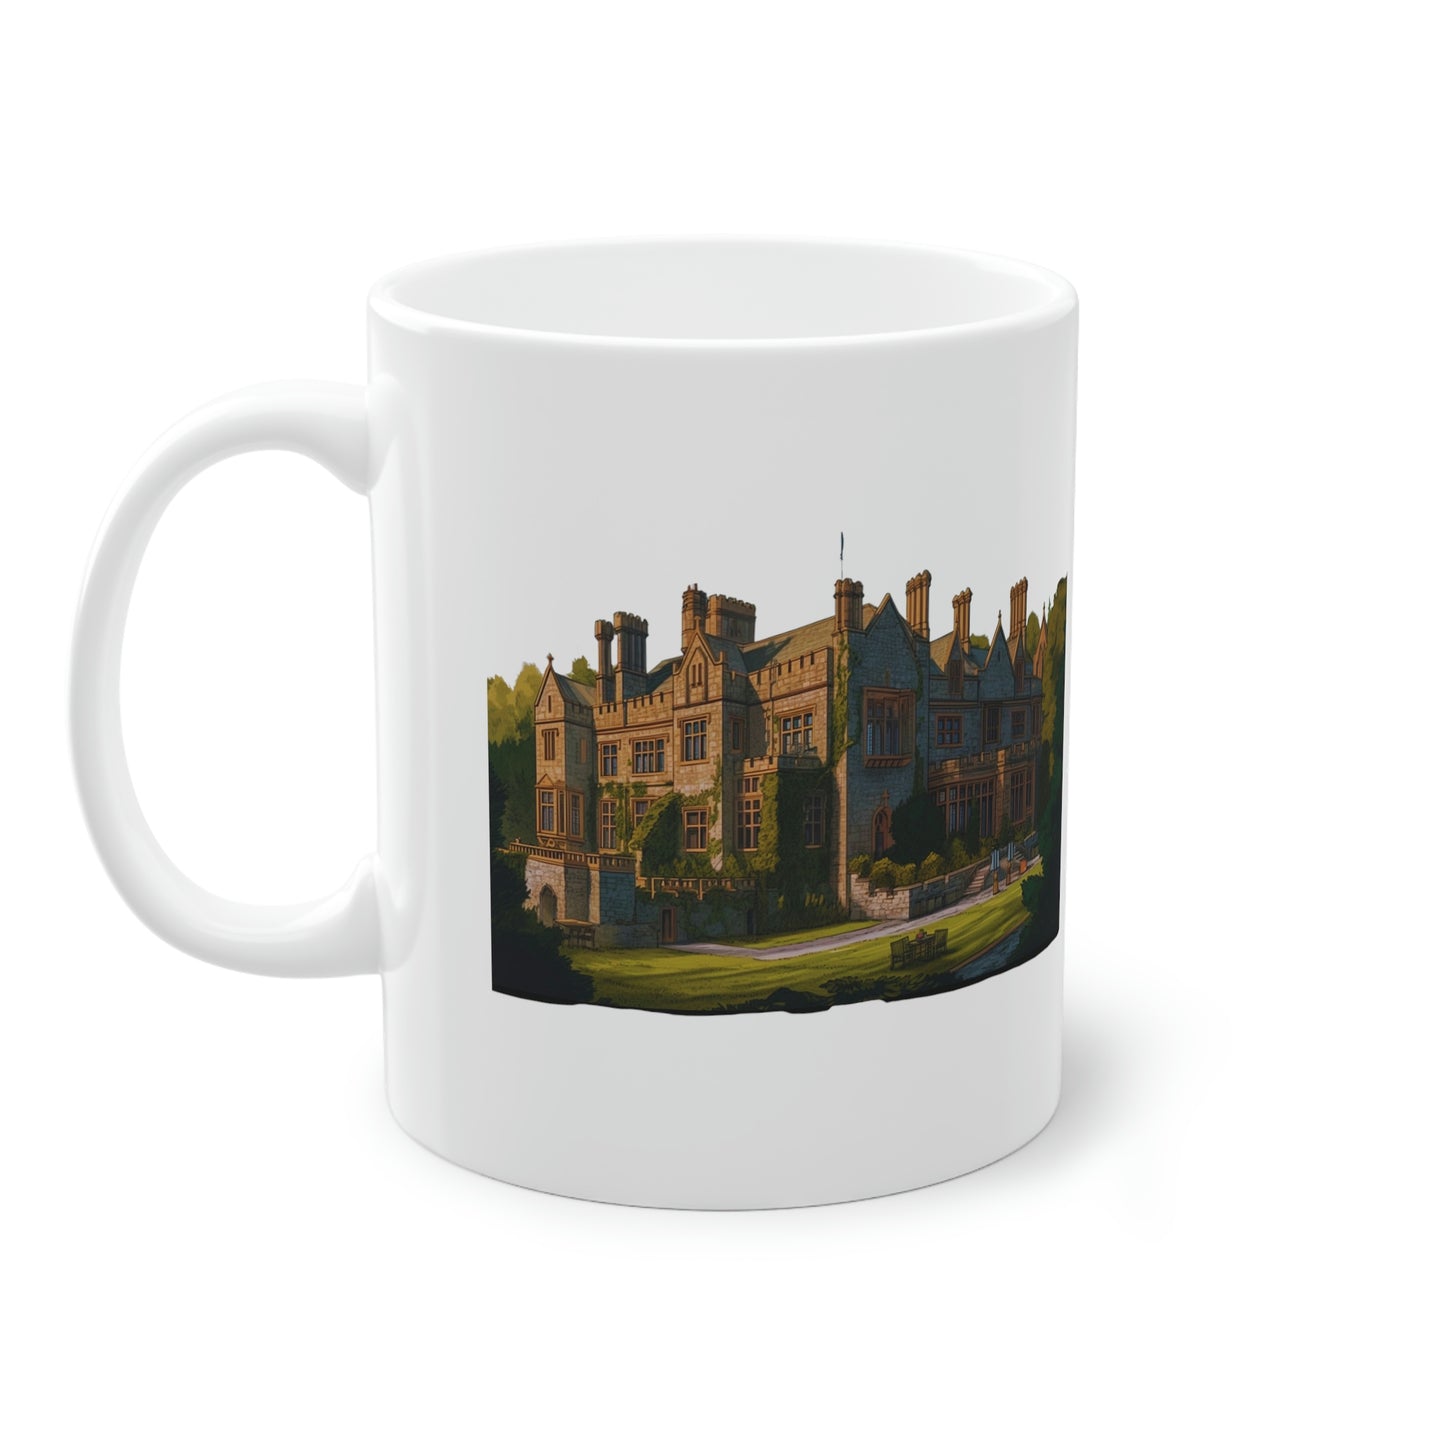 Waterford Castle - Stylish Mug